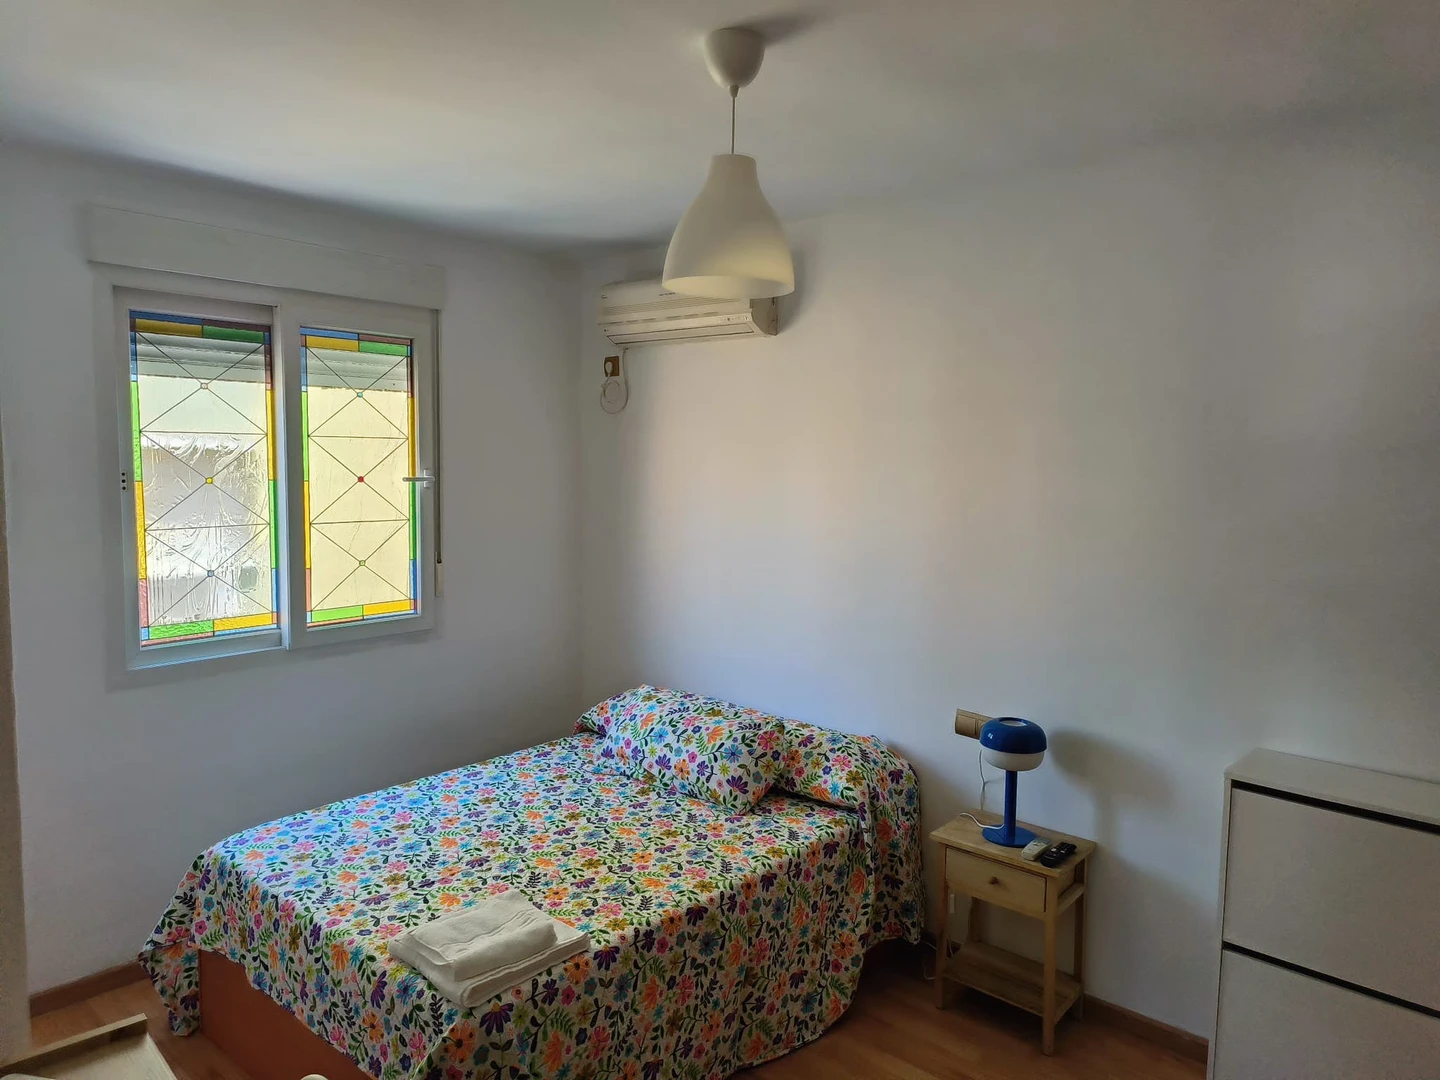 Shared room in 3-bedroom flat Malaga